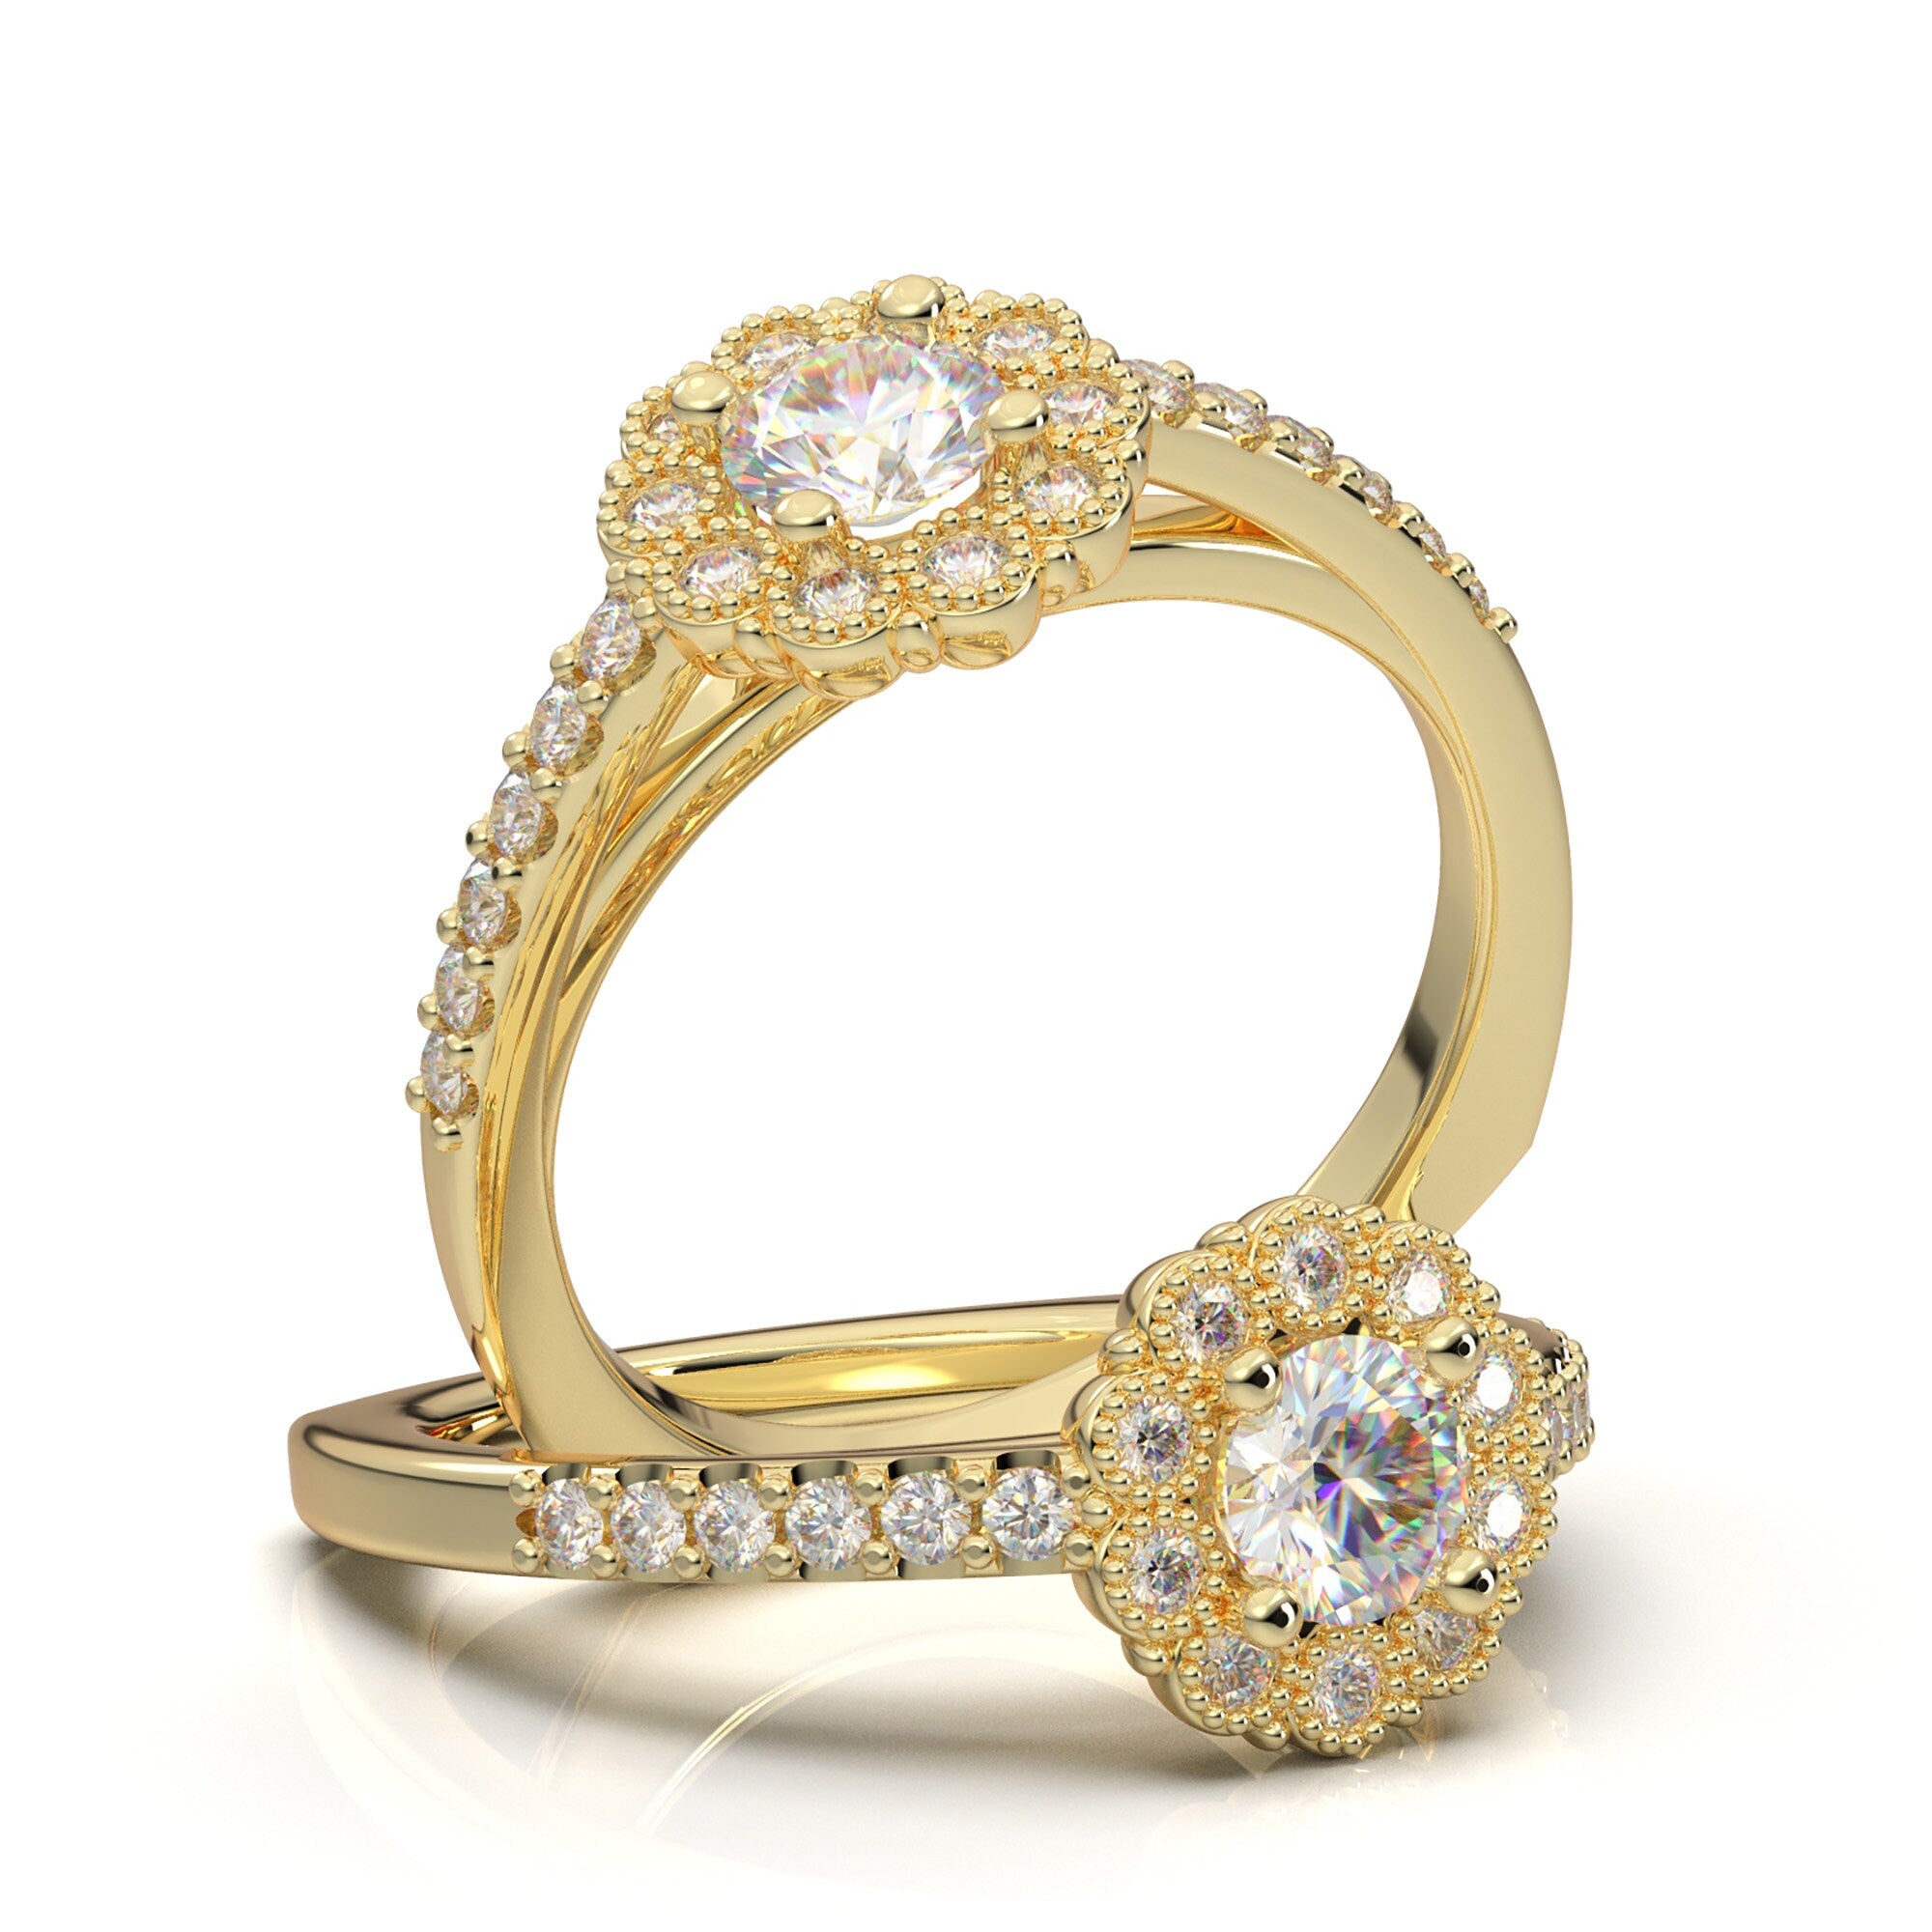 17 Beautiful Anniversary Rings for Her | Joseph Jewelry